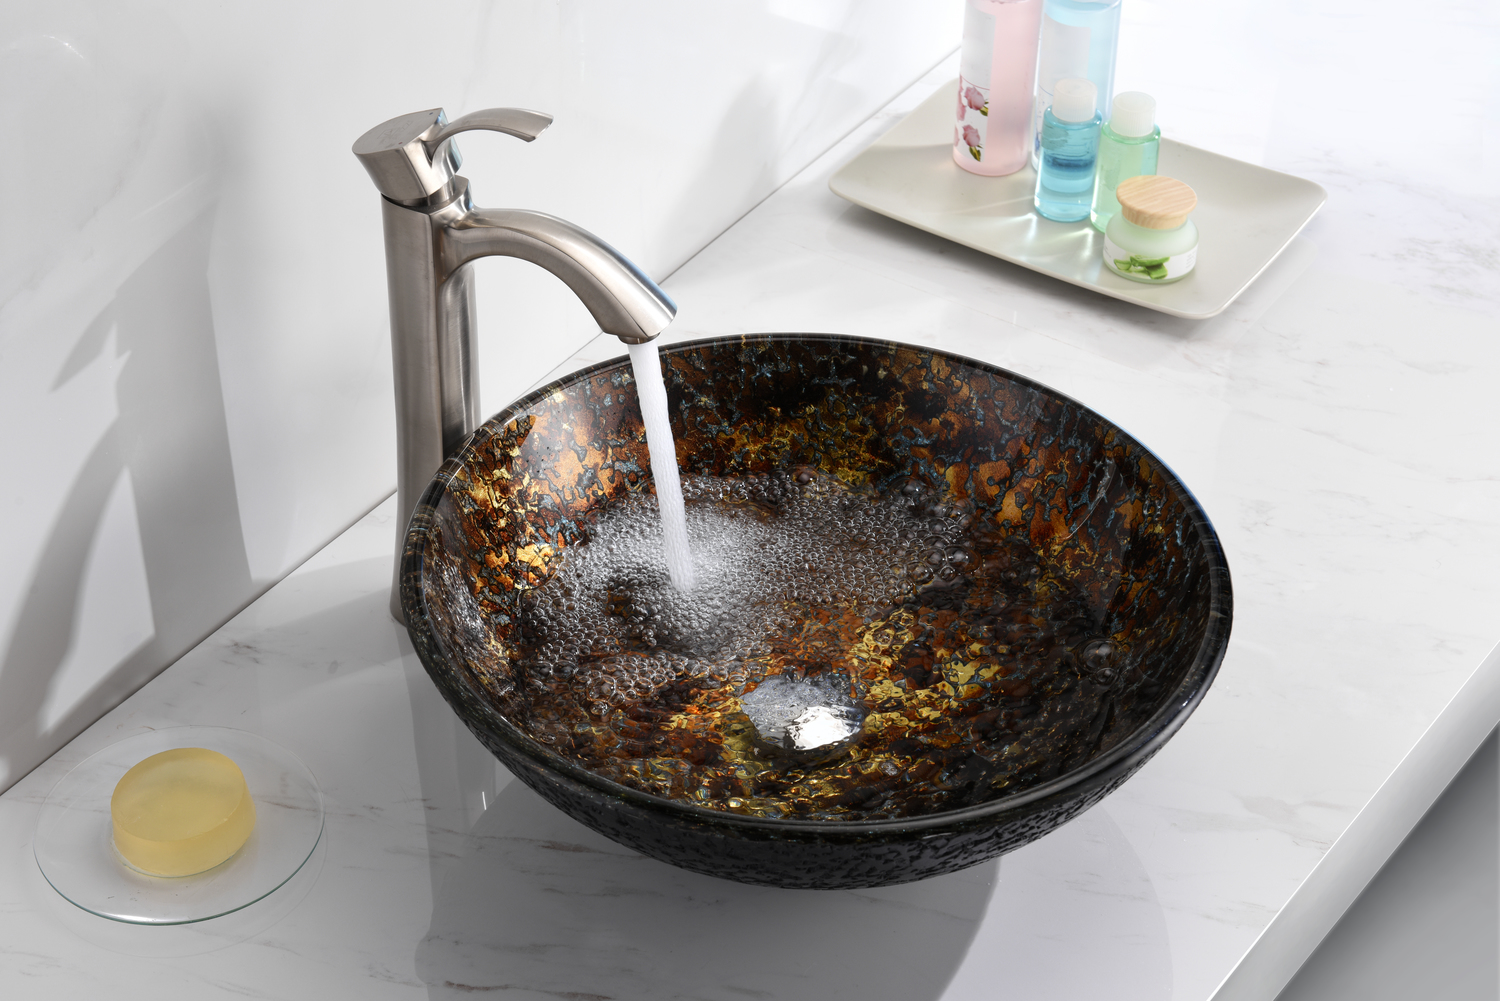  Anzzi BATHROOM - Sinks - Vessel - Tempered Glass Bathroom Vanity Sinks Brown